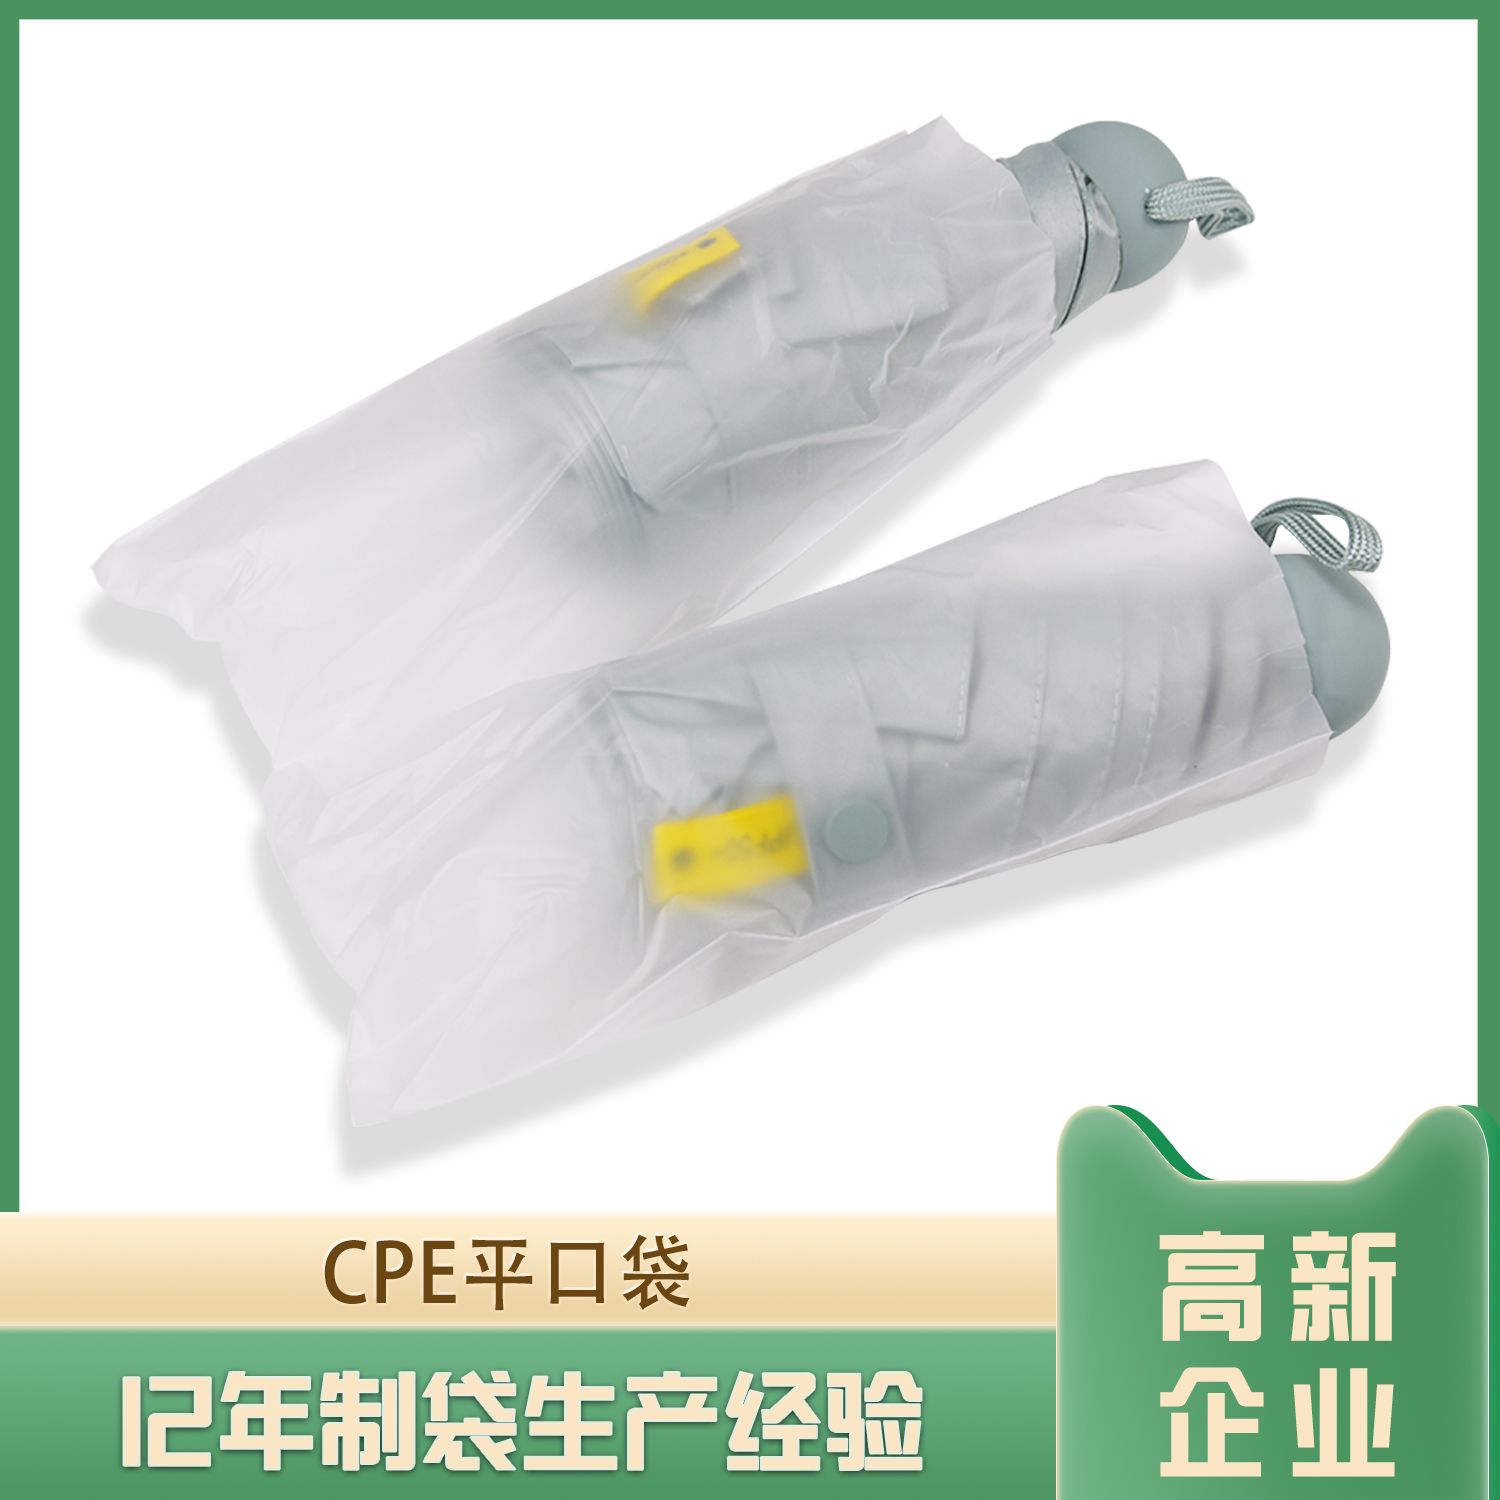 雨伞包装CPE平口袋定制(图1)